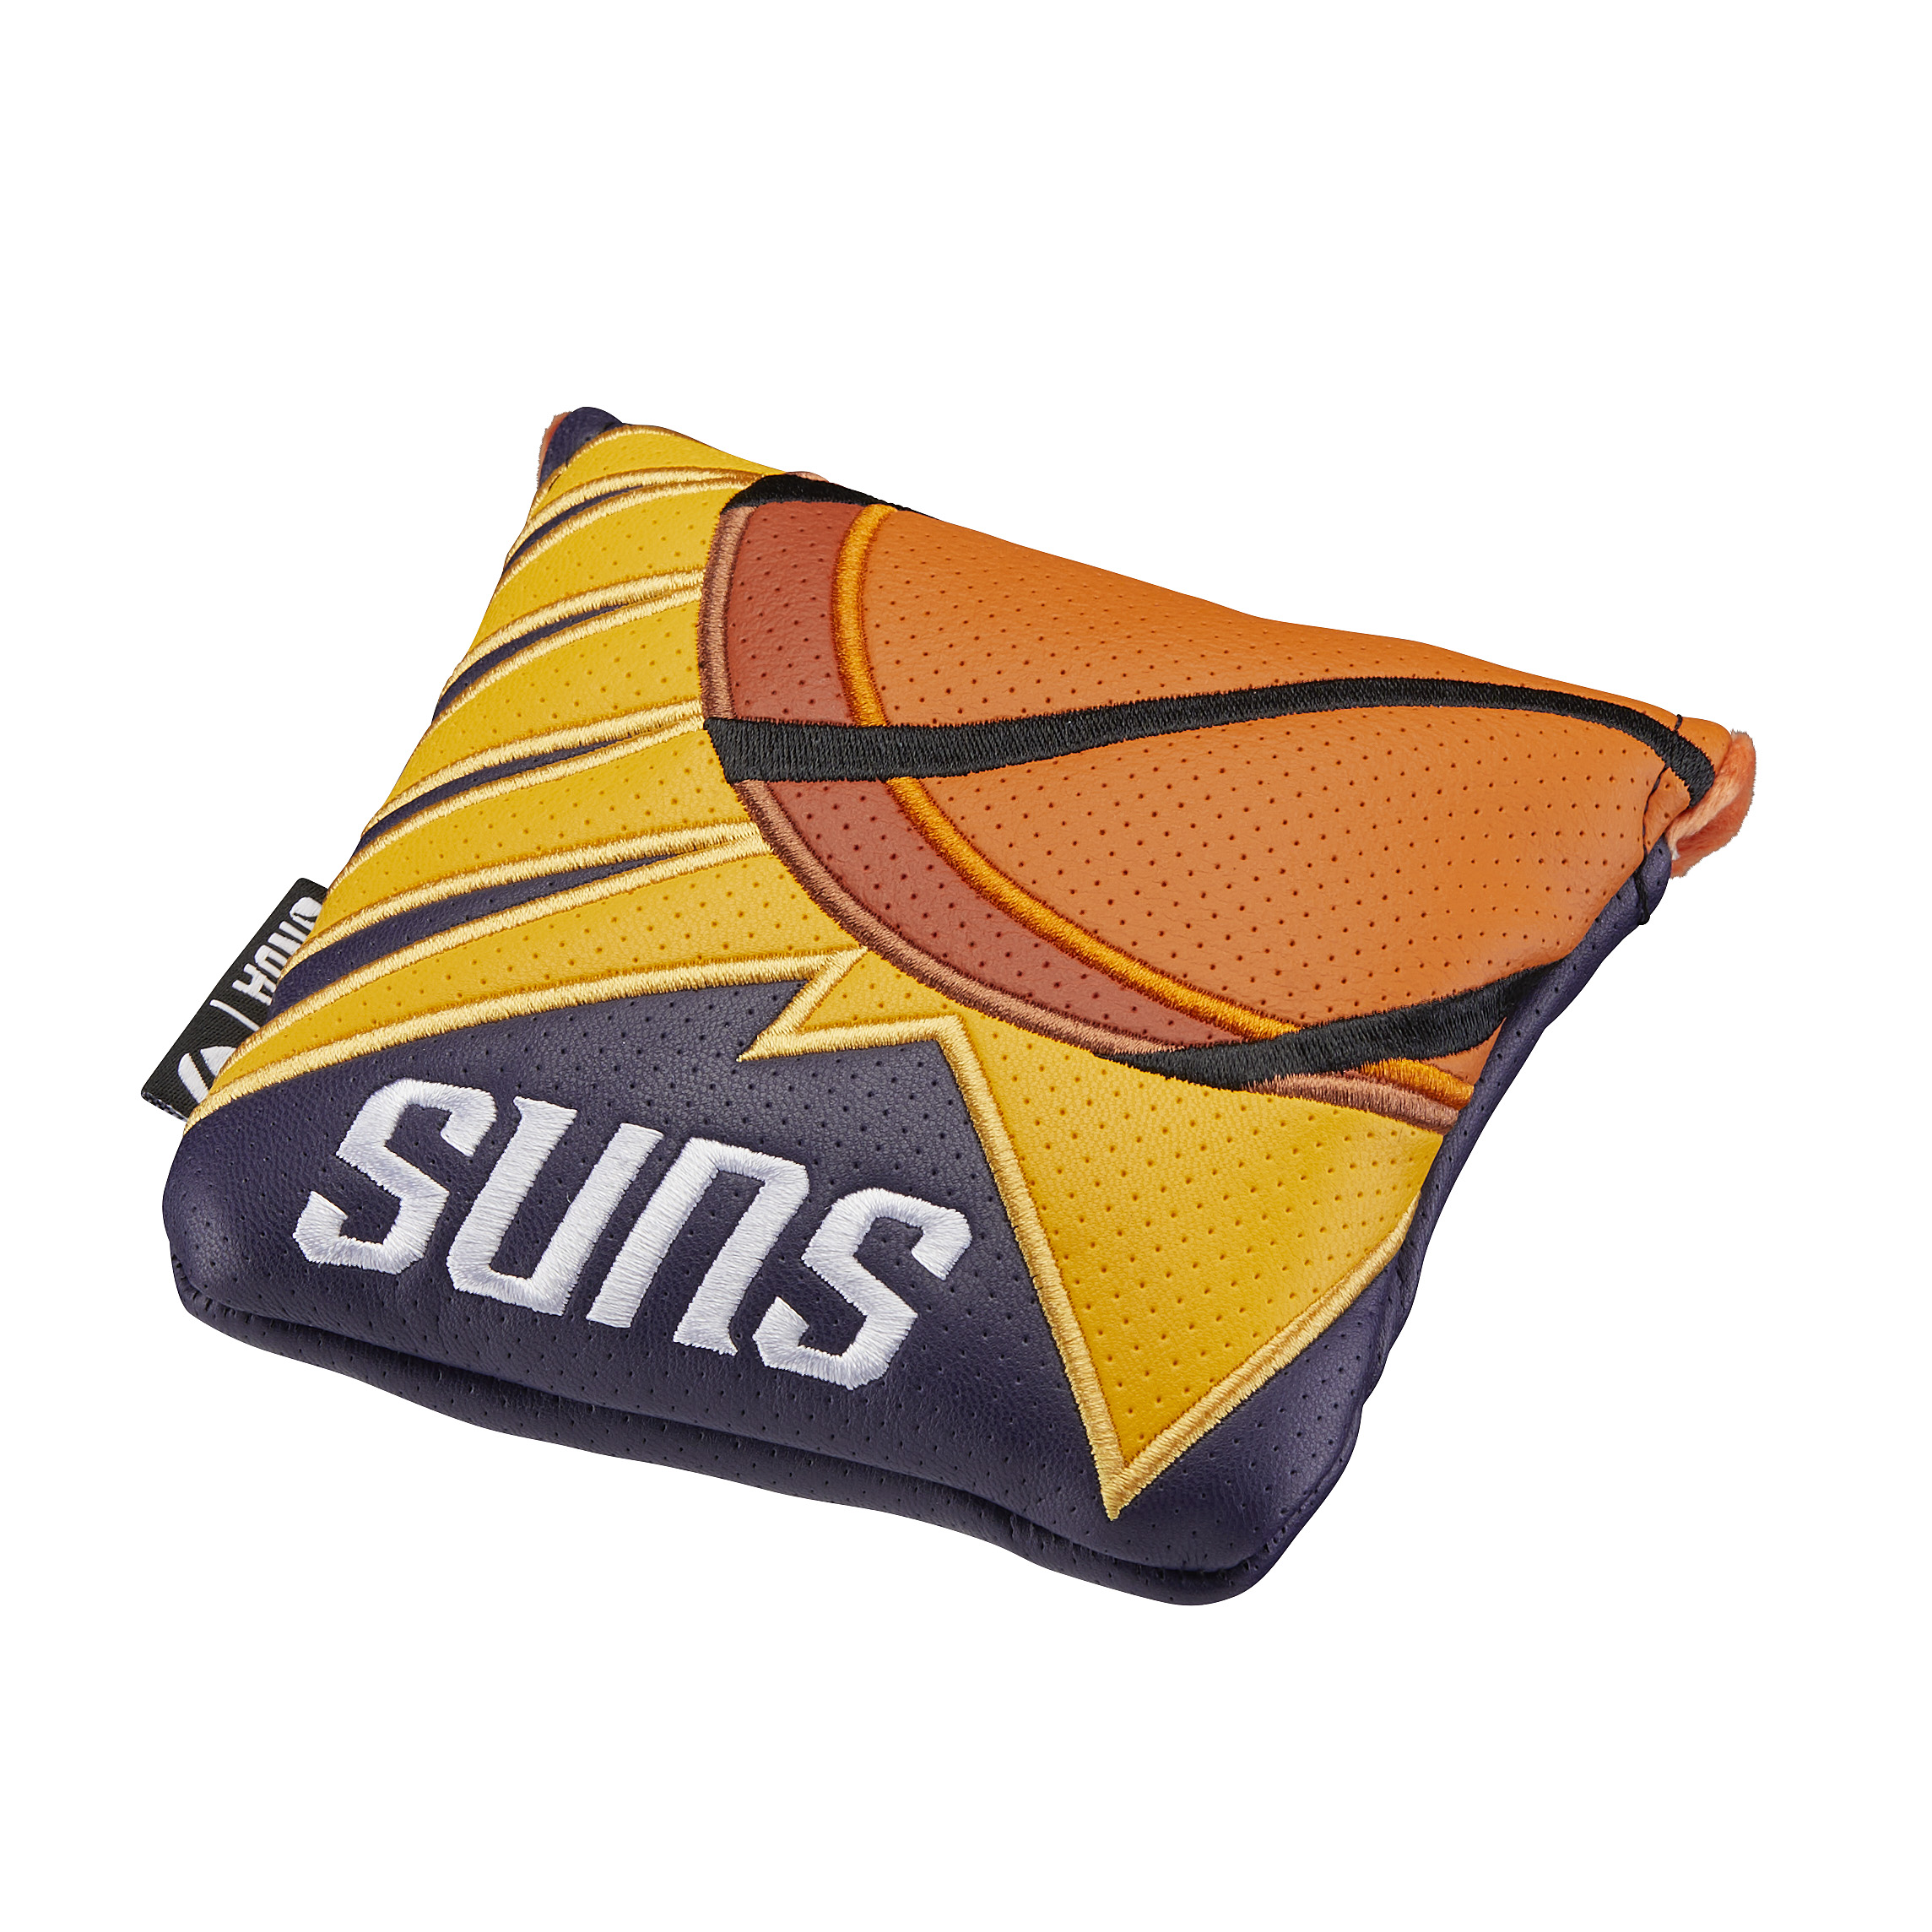 Phoenix Sunsスパイダーヘッドカバー /画像